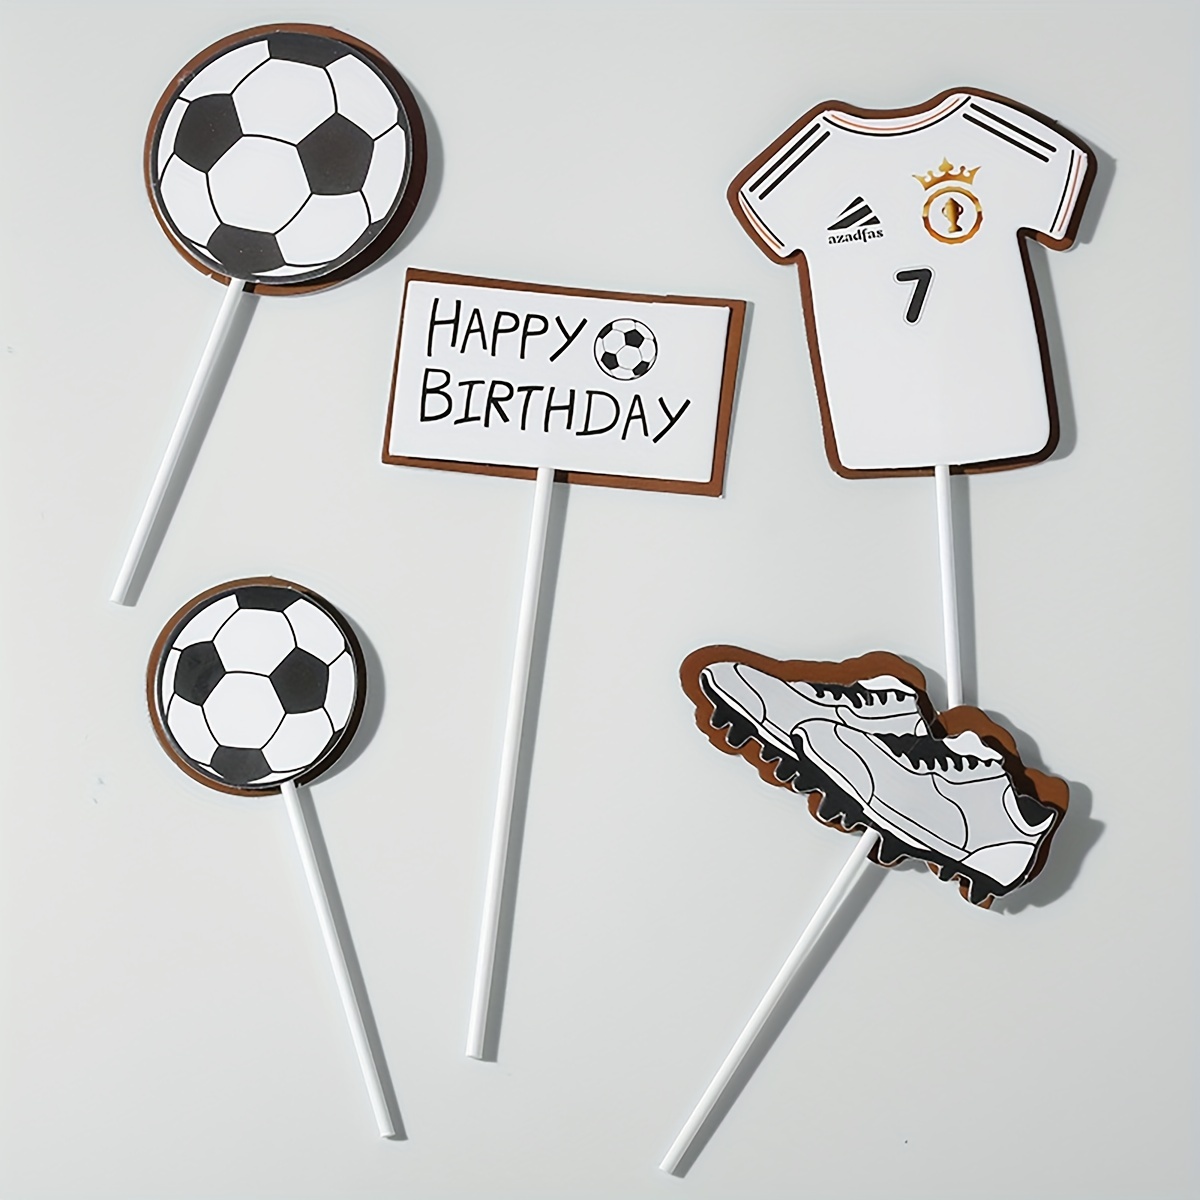 Décoration De Gâteau D'anniversaire De Football Pour Enfants